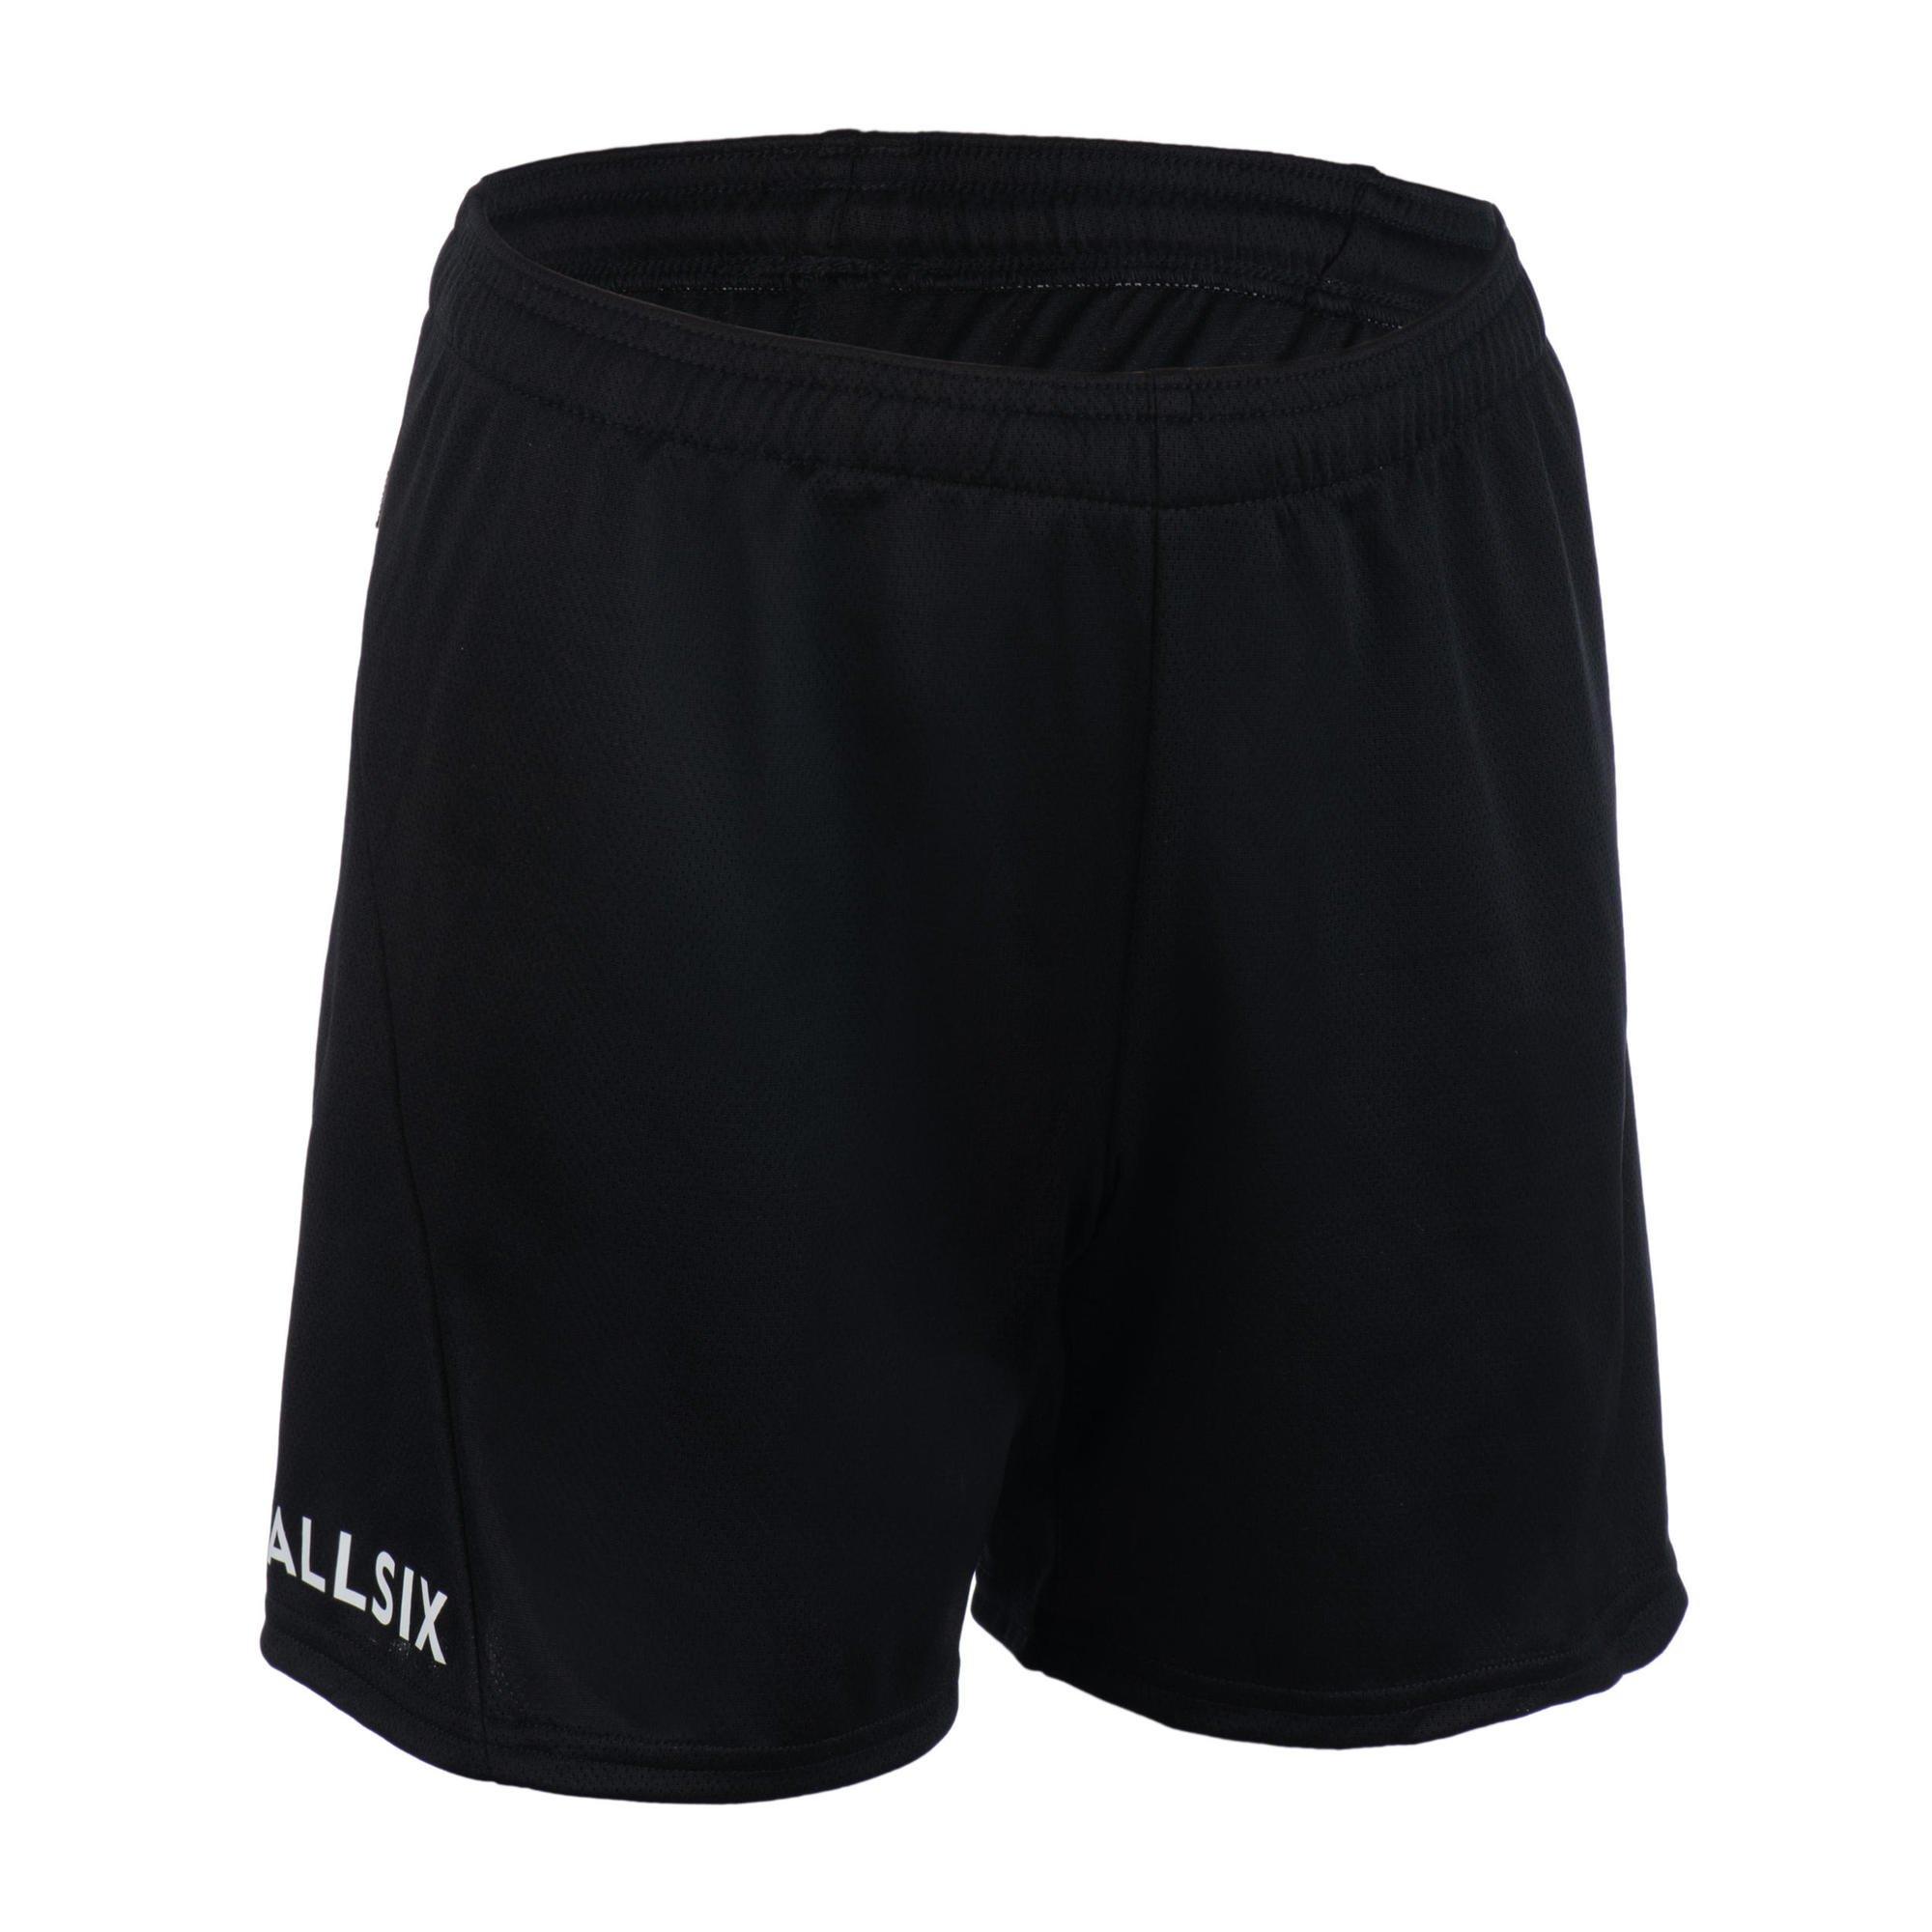 Волейбольные шорты Decathlon для тренировок Allsix, черный волейбольные шорты decathlon v100 allsix черный